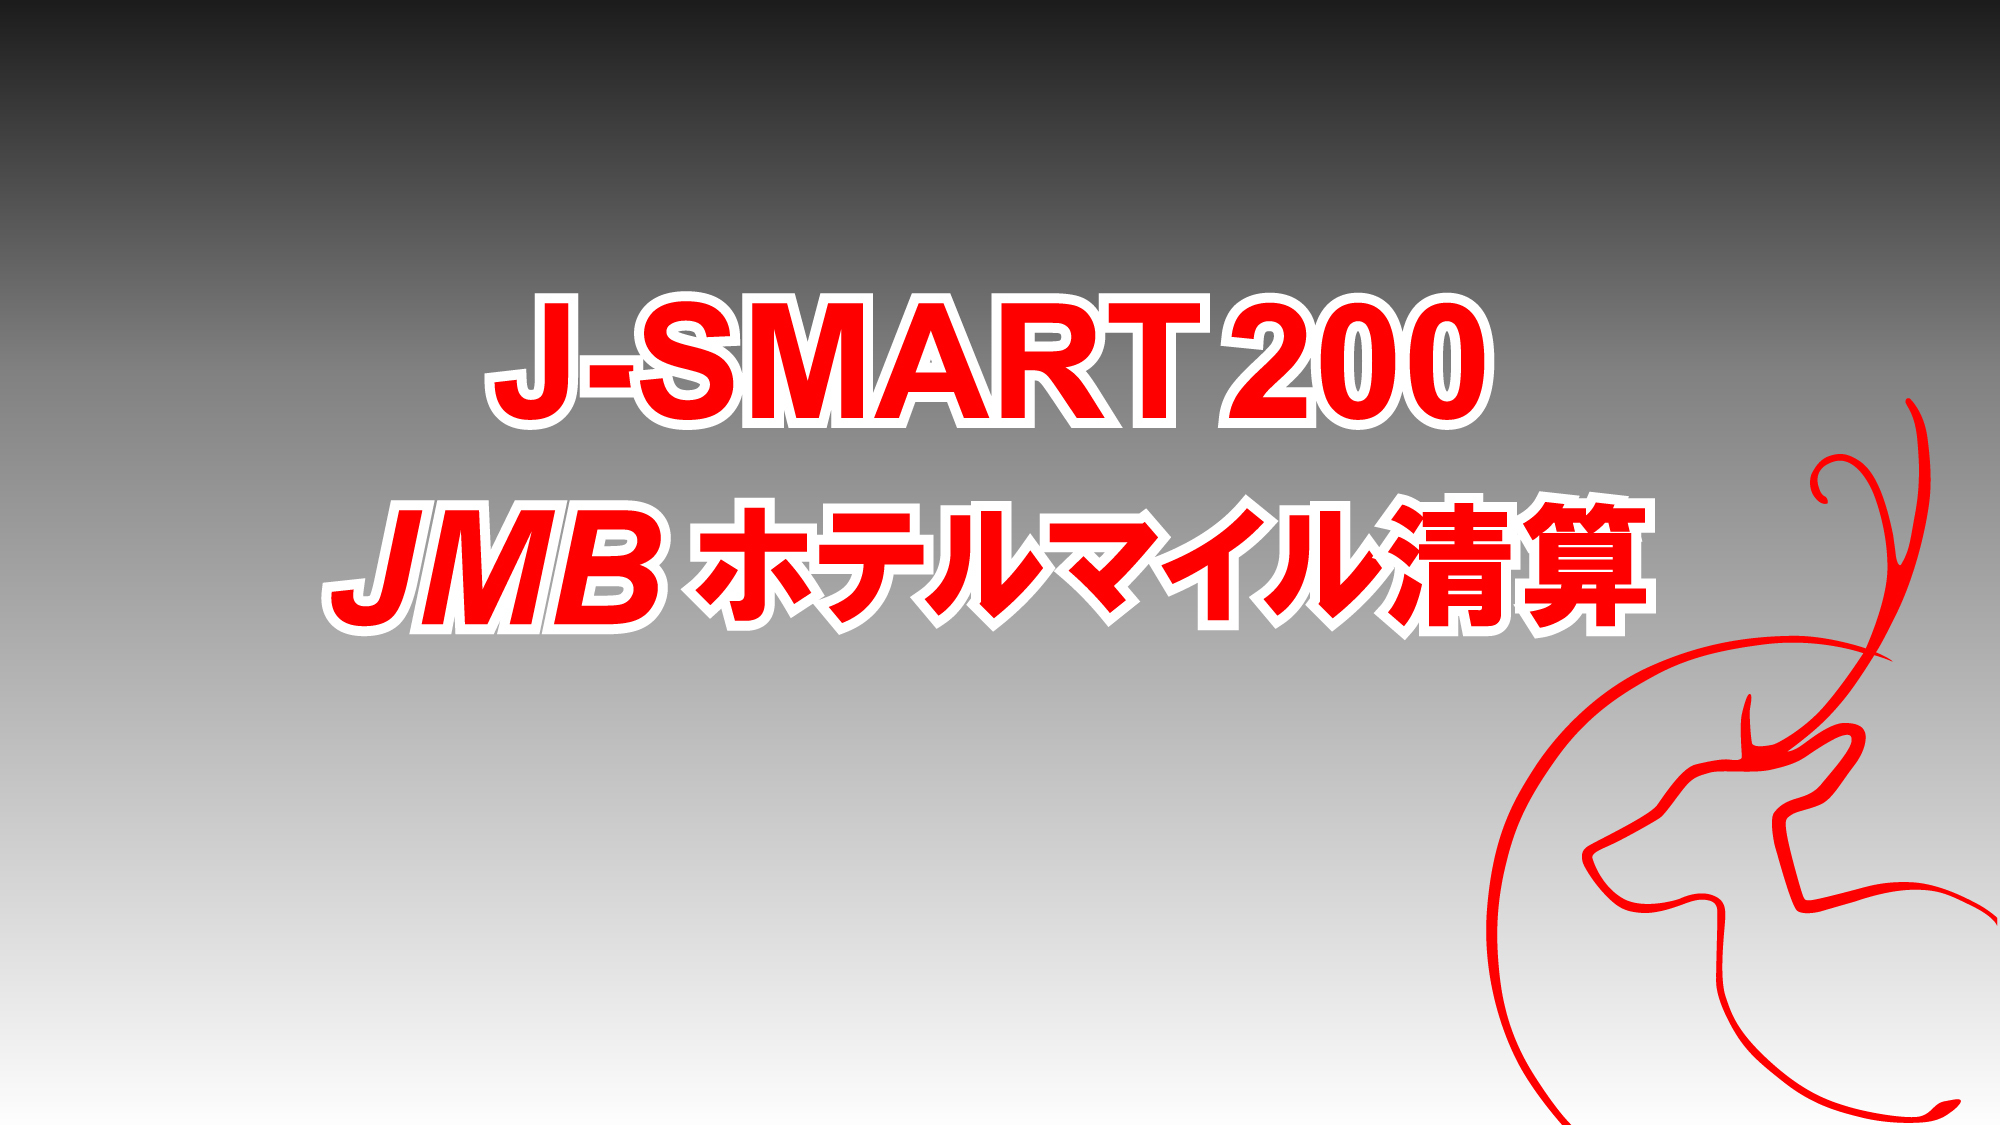 【J-SMART200 Breakfast】JMB200マイル／朝食付